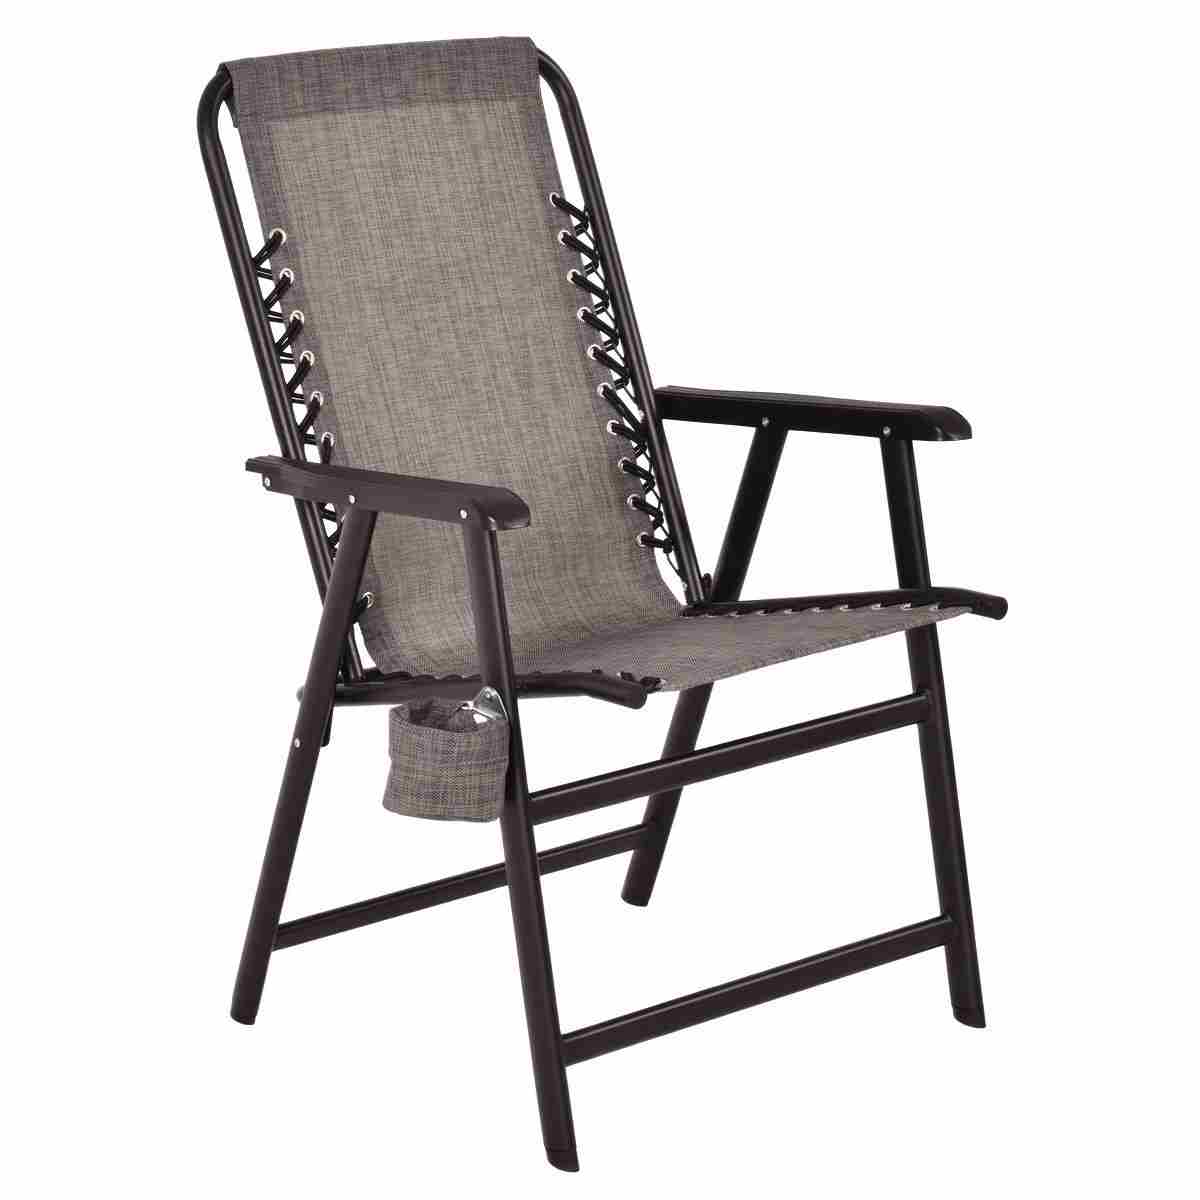 terralite portable camp chair